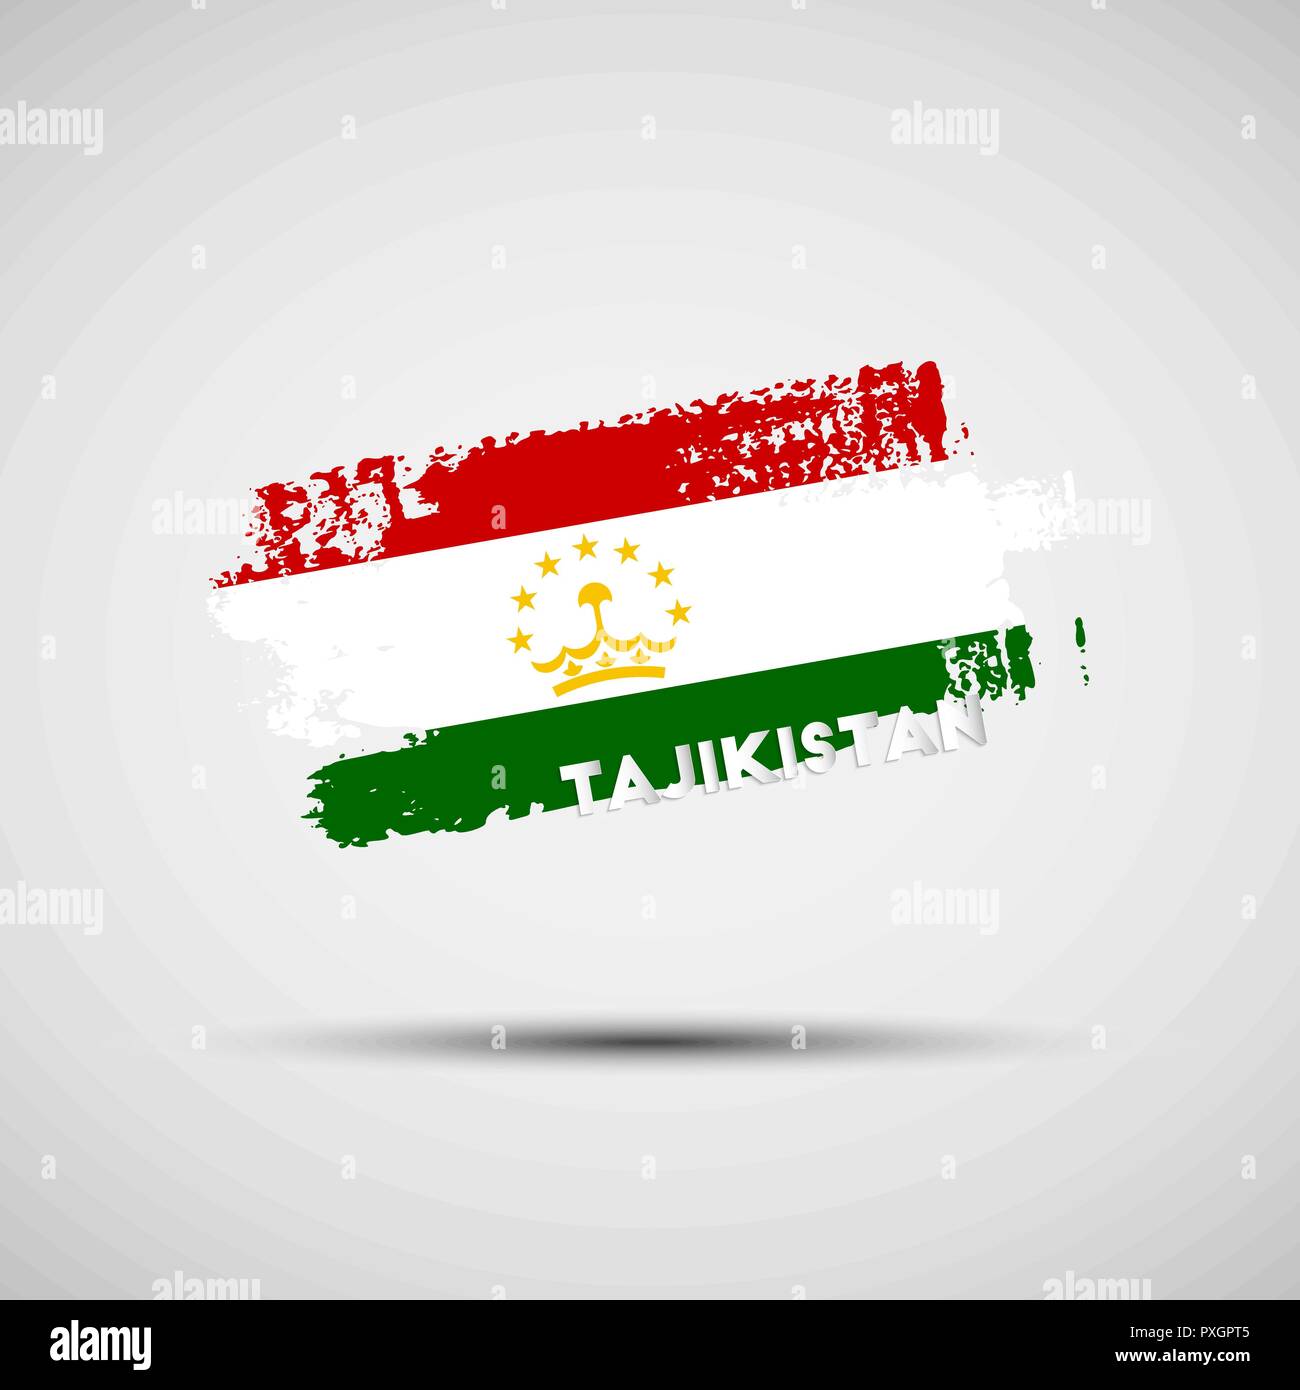 Flagge Tadschikistan. Vector Illustration von Grunge Pinselstrich mit nationalen Tadschikistan Flagge Farben für Ihre Grafik- und Webdesign Stock Vektor